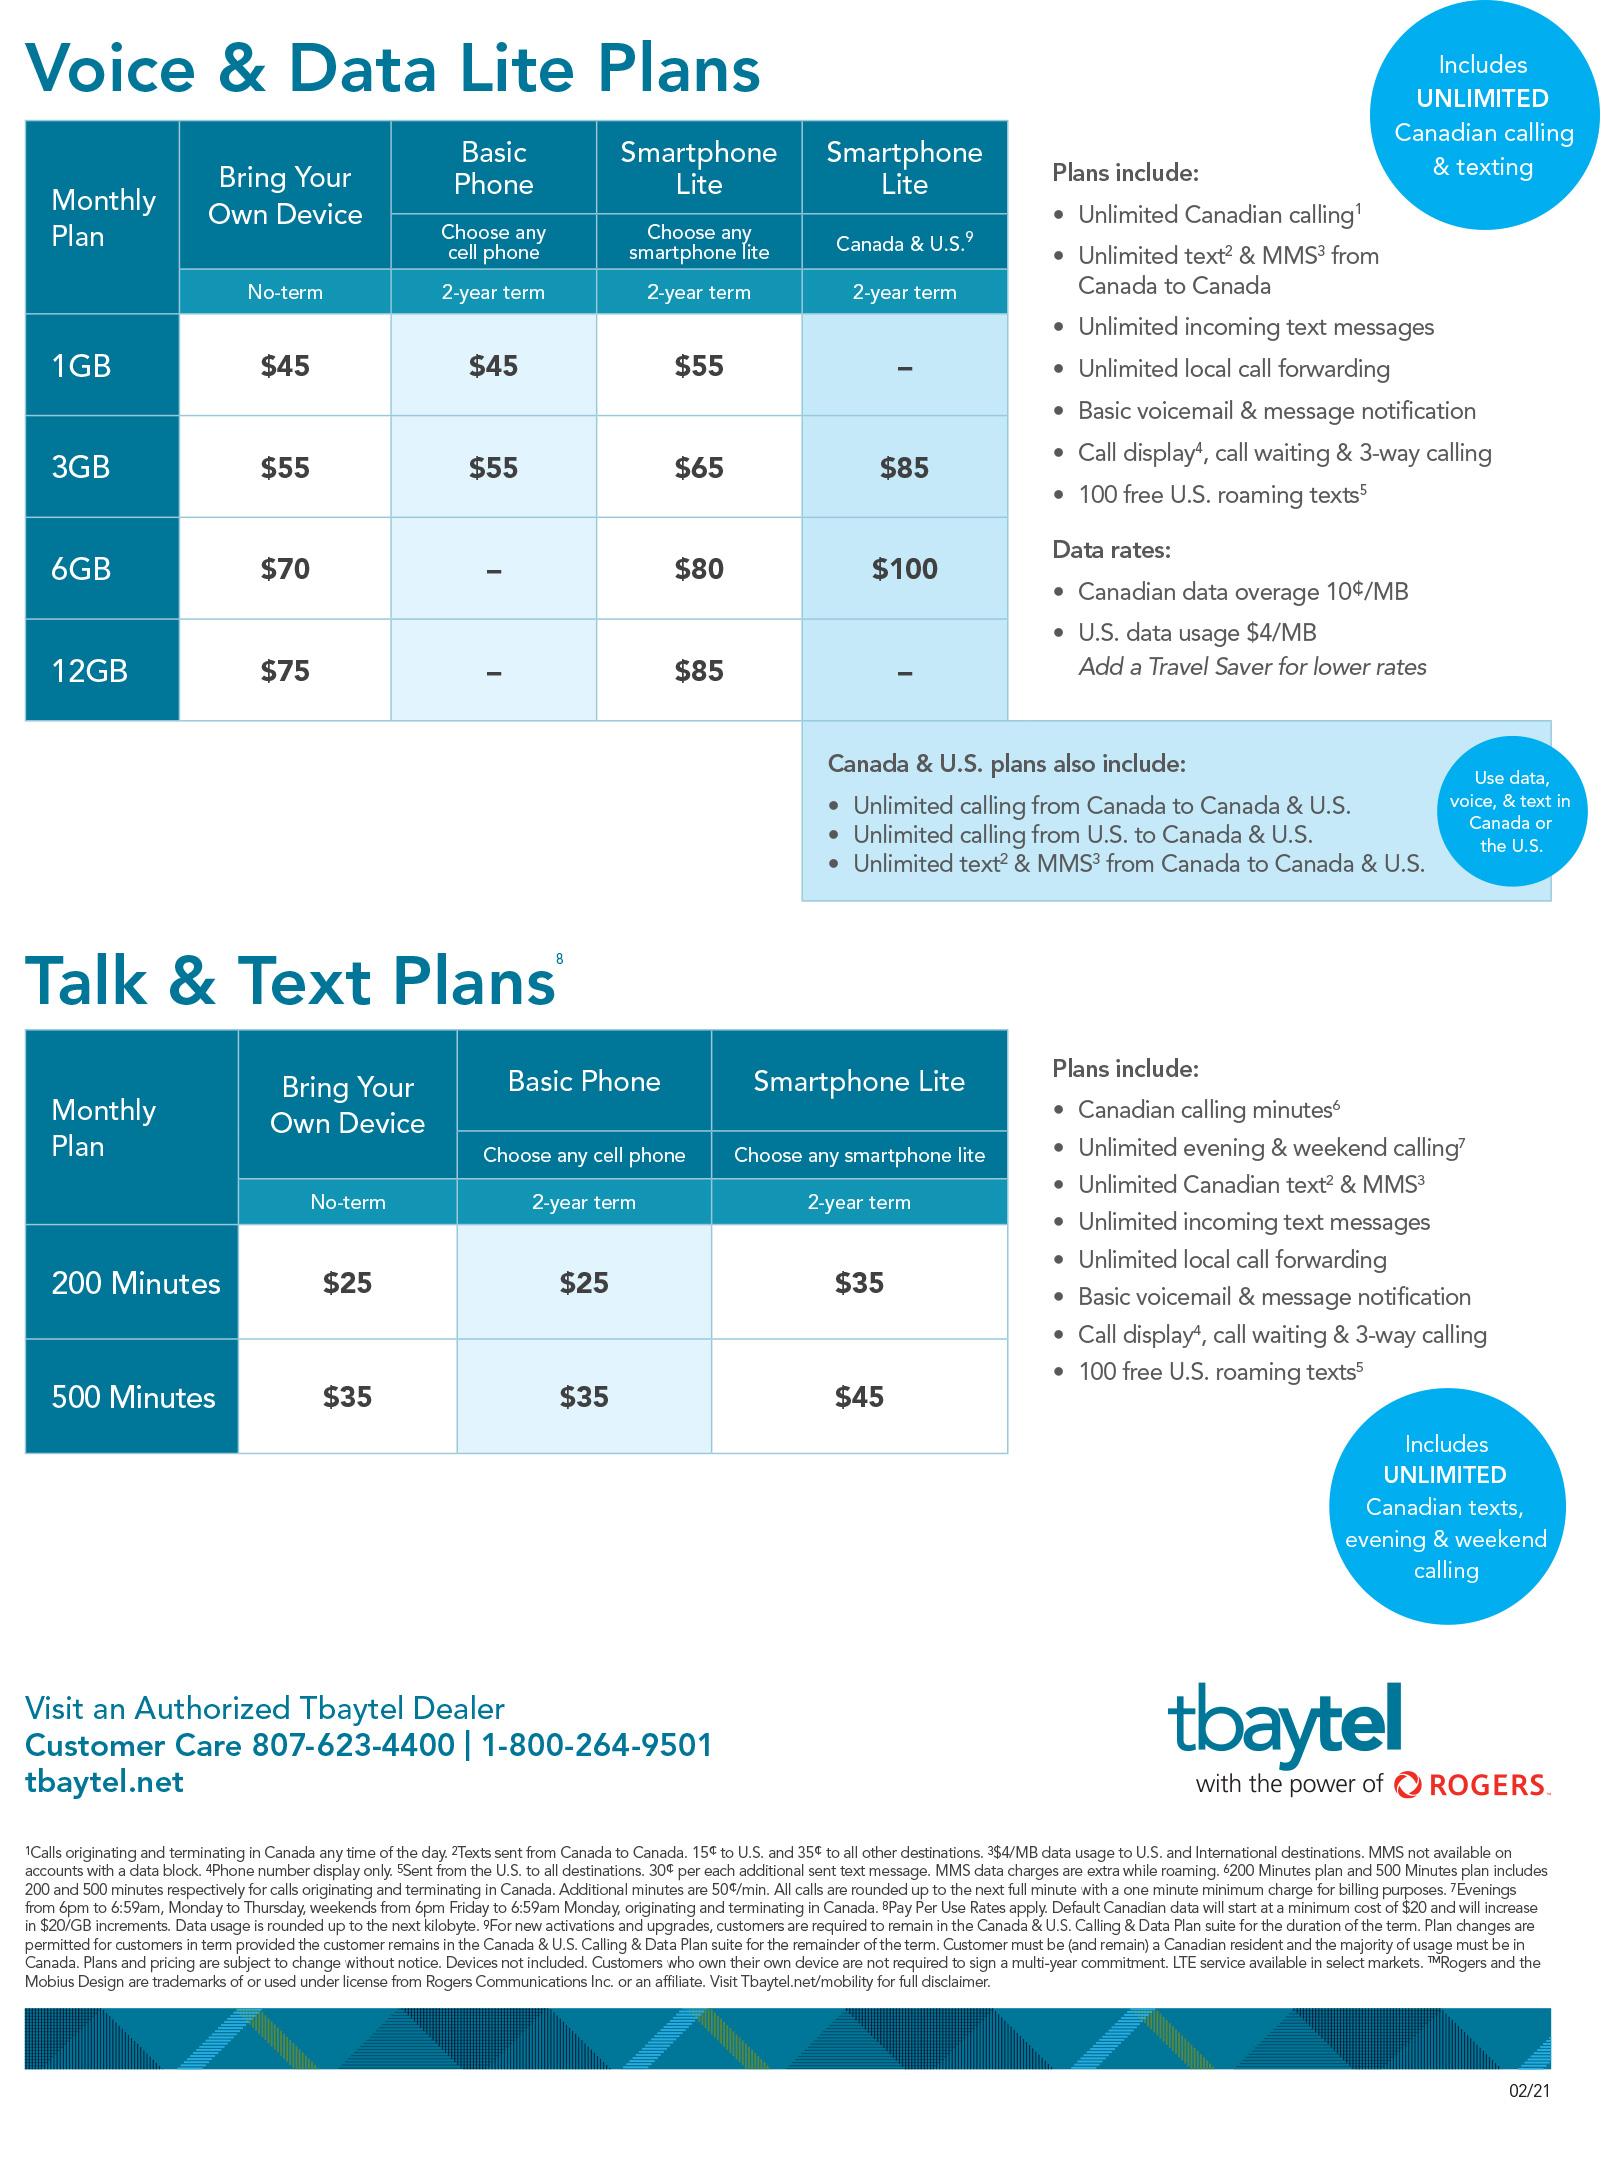 TbaytelSmartphonePlans---021121-1-2